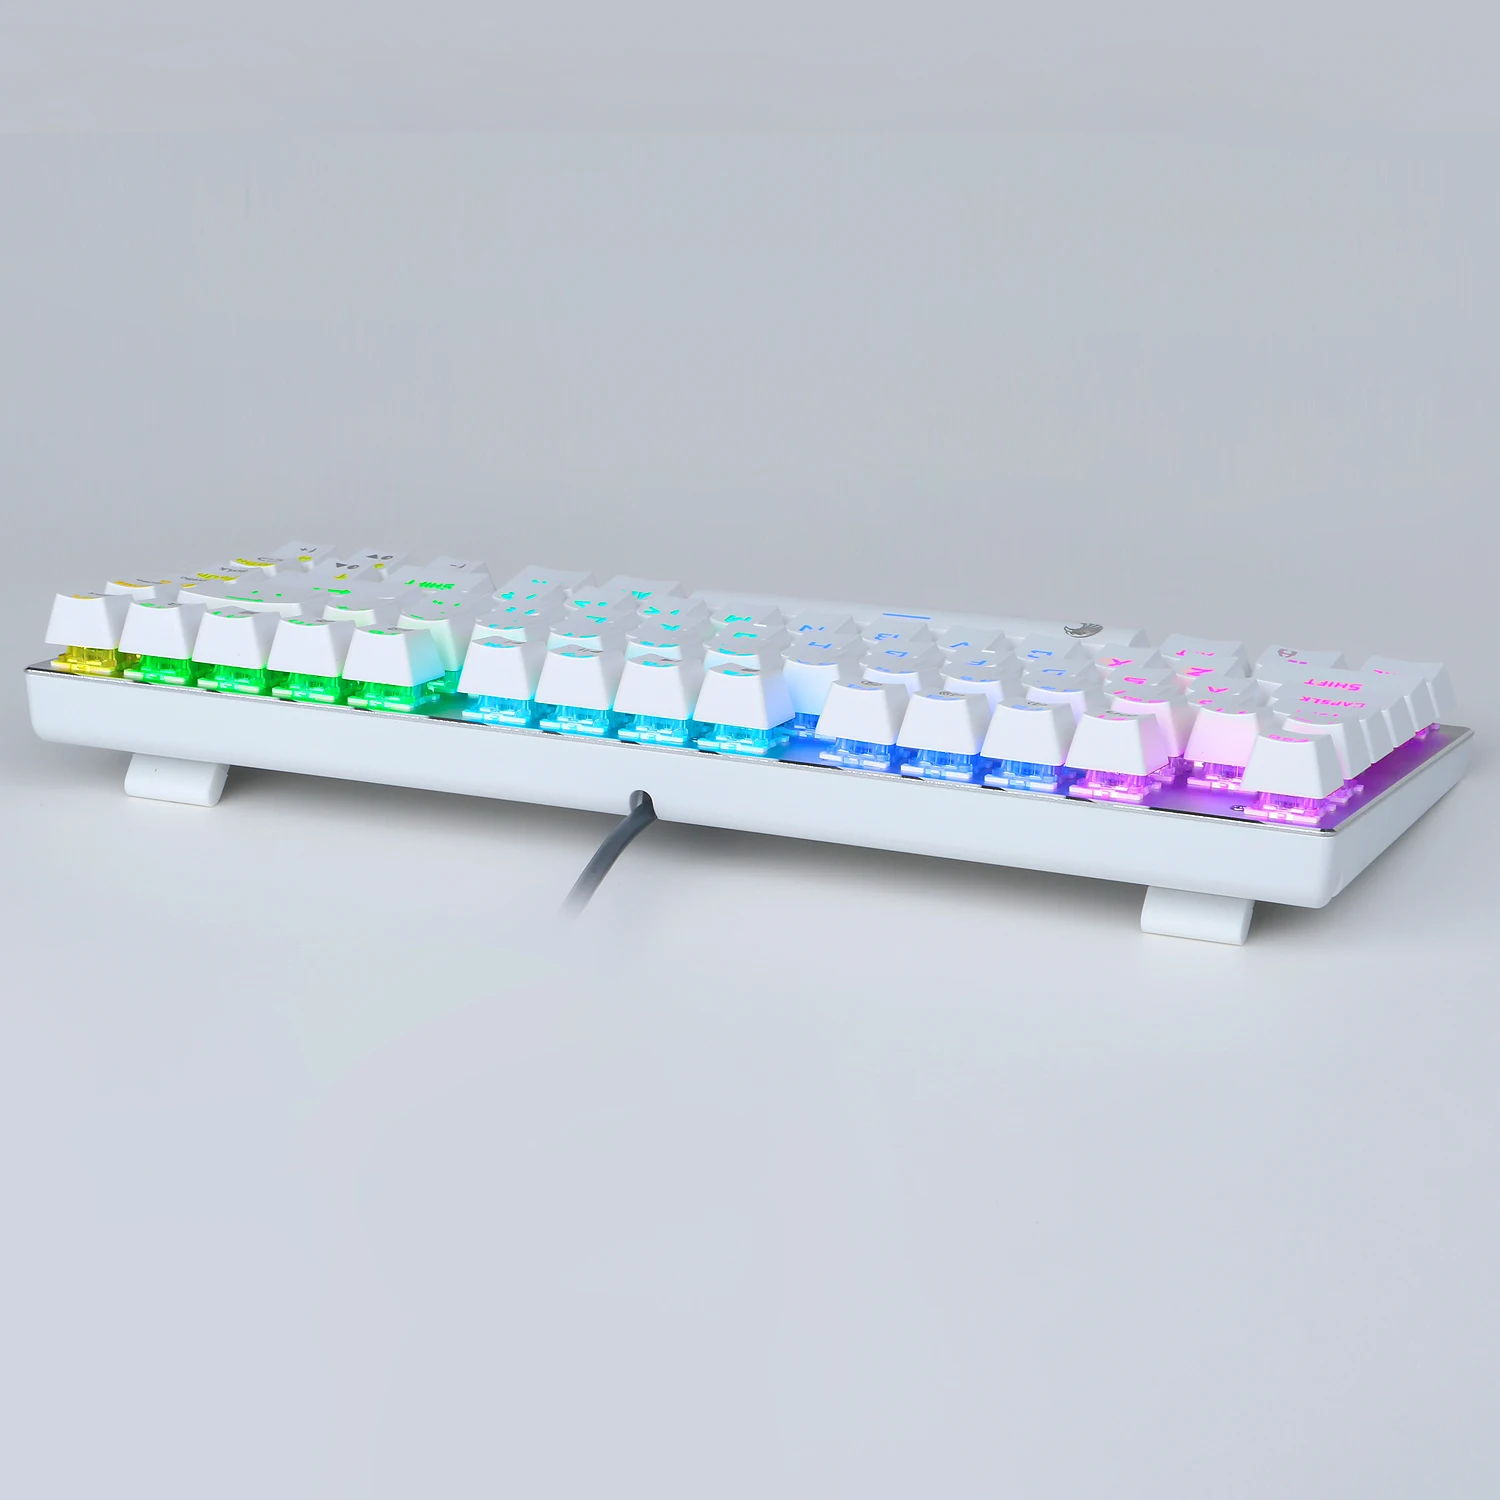 Z-88 мини механическая клавиатура RGB подсветка Outemu переключатель TKL дизайн алюминиевая верхняя панель США раскладка игровая клавиатура